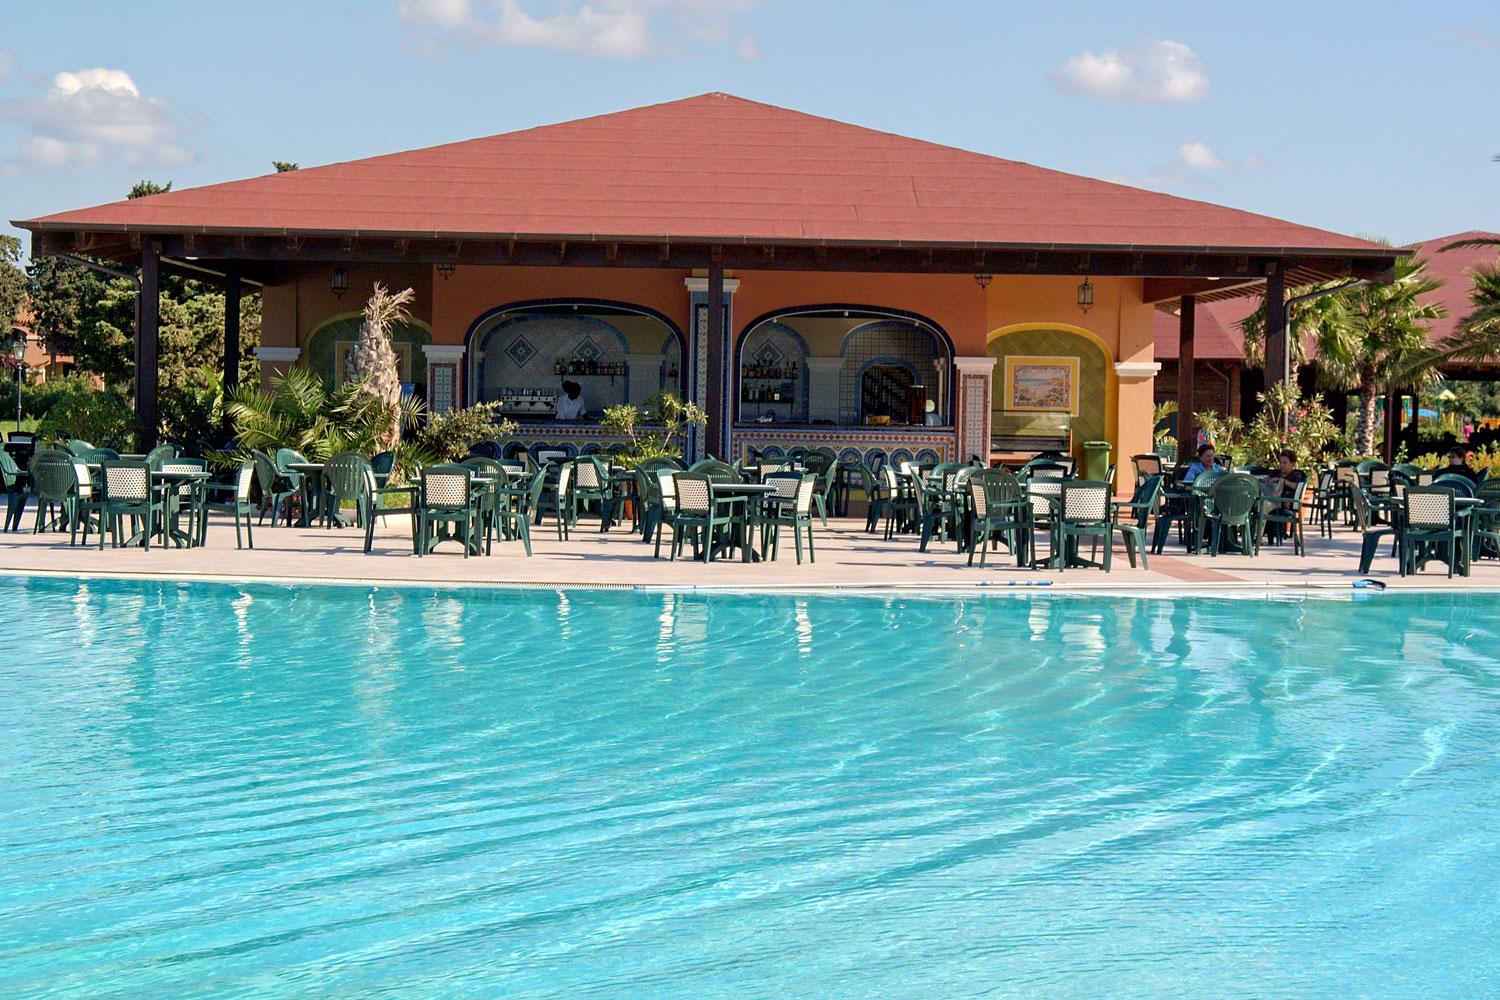 Il Bar Piscina del Marina Resort Garden & Beach Club con terrazza all'aperto a due passi dall'area attrezzata con ombrelloni e lettini.